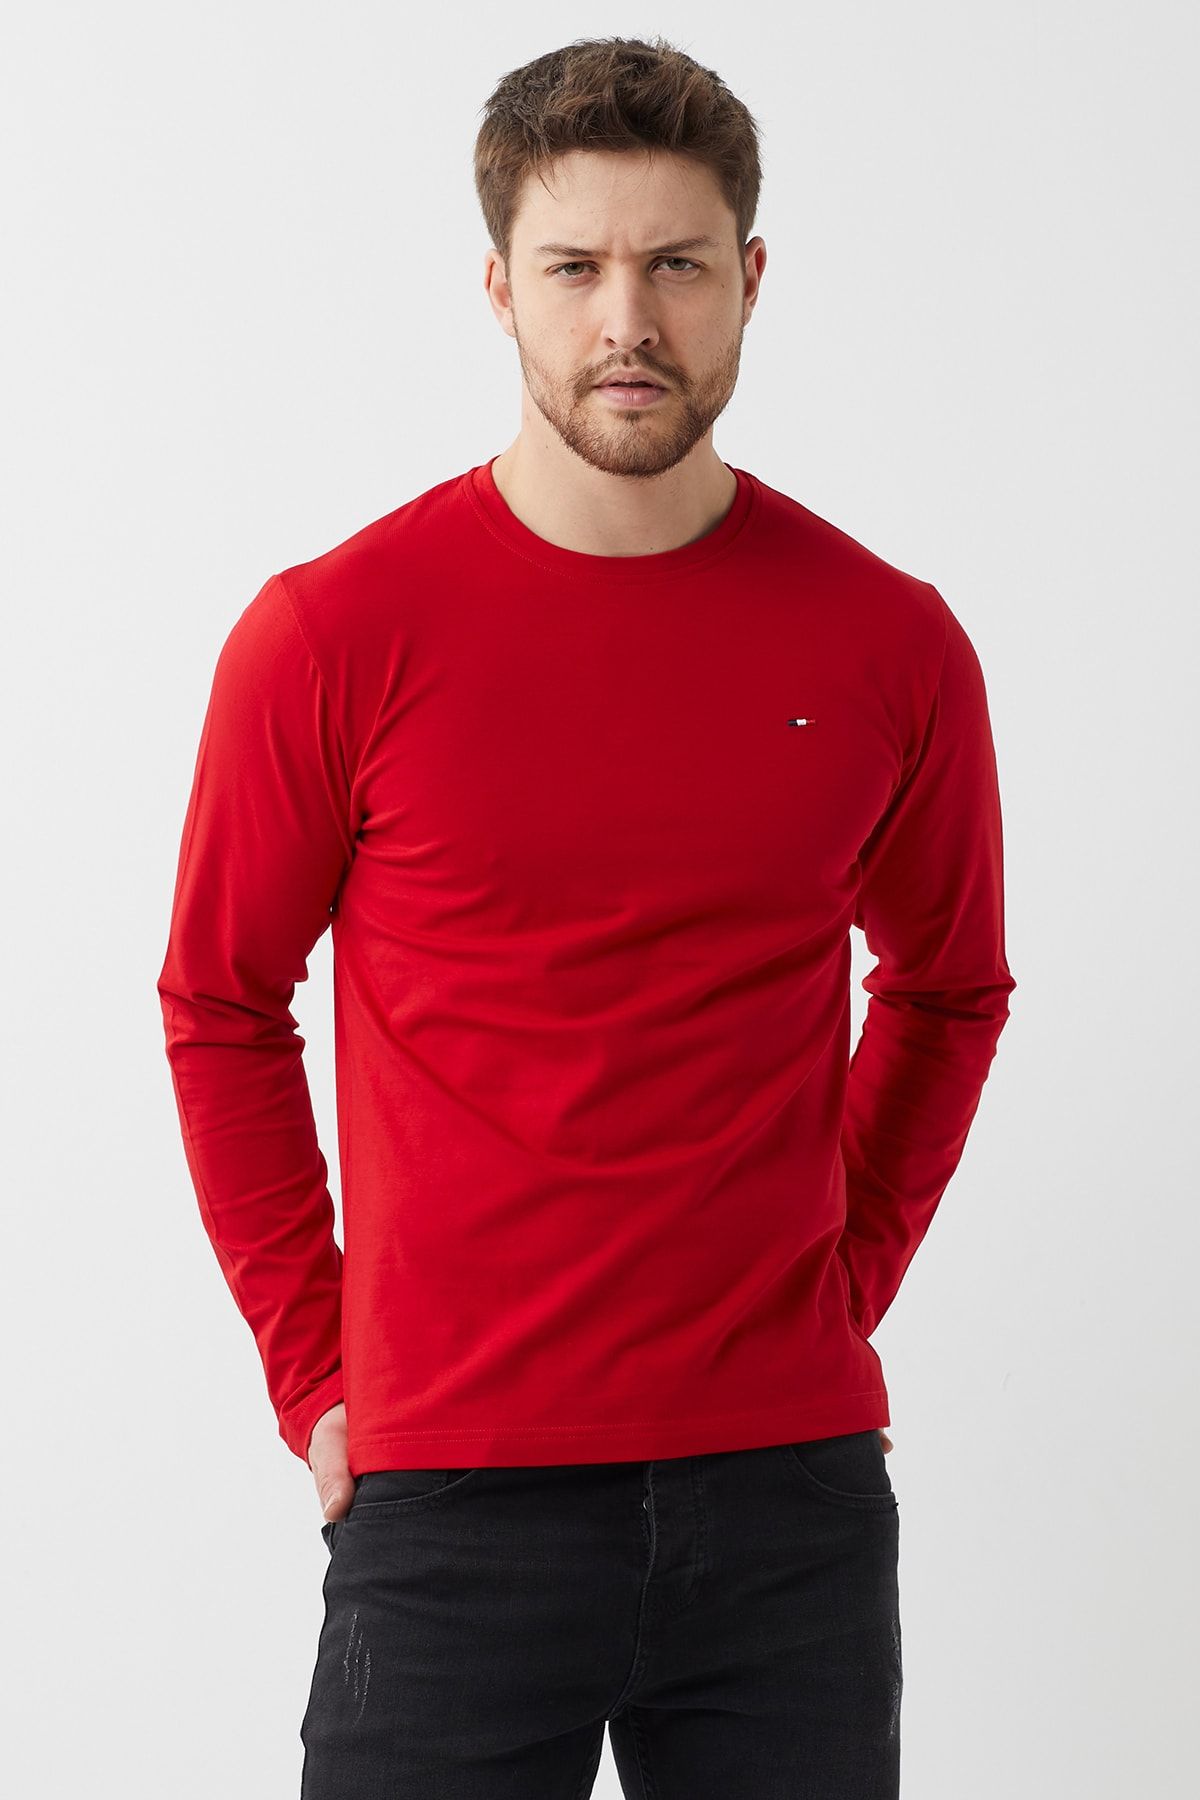 COMEOR Man Kırmızı Bisiklet Yaka Erkek Düz Basic Ince Sweatshirt